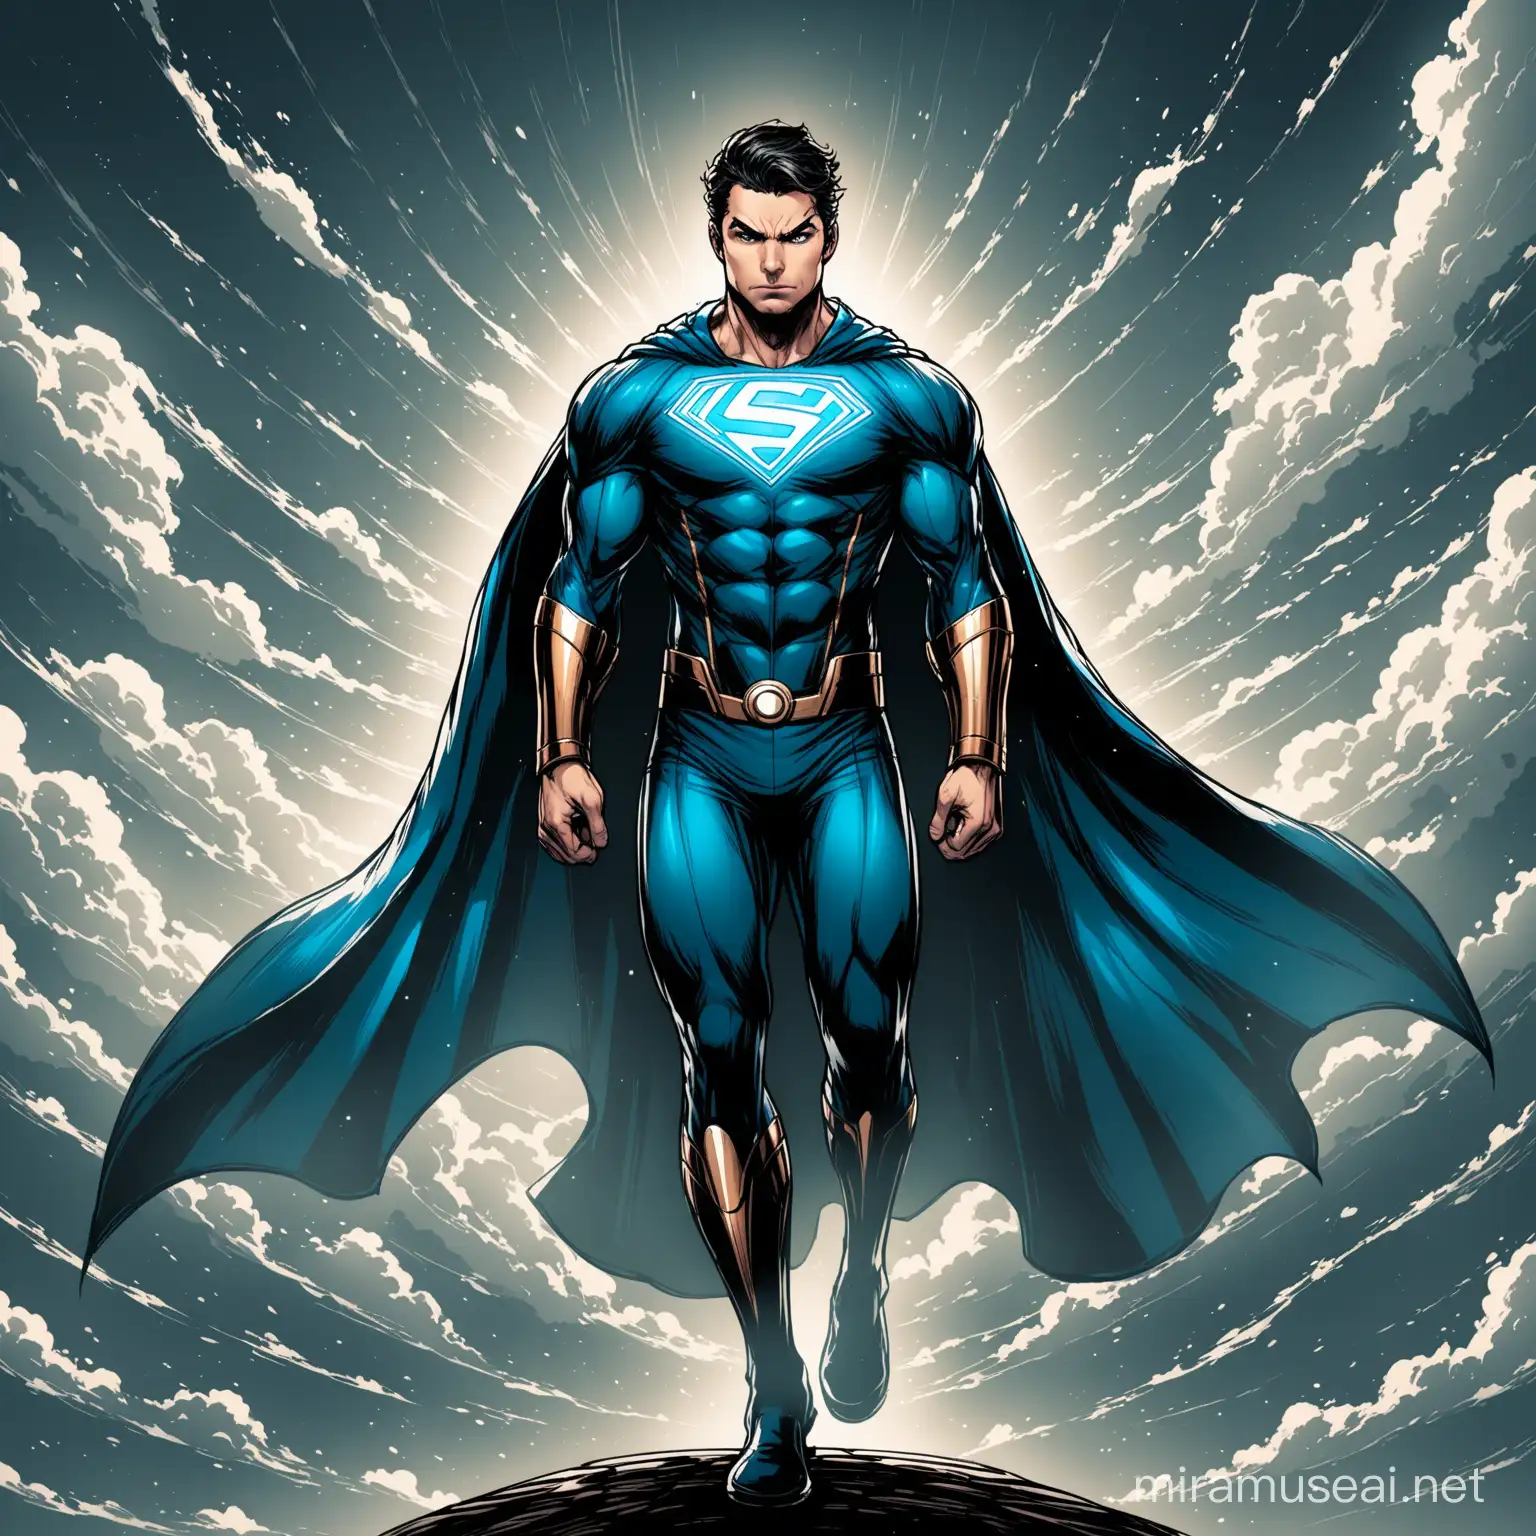 An aerokinesis themed superhero, dramatic